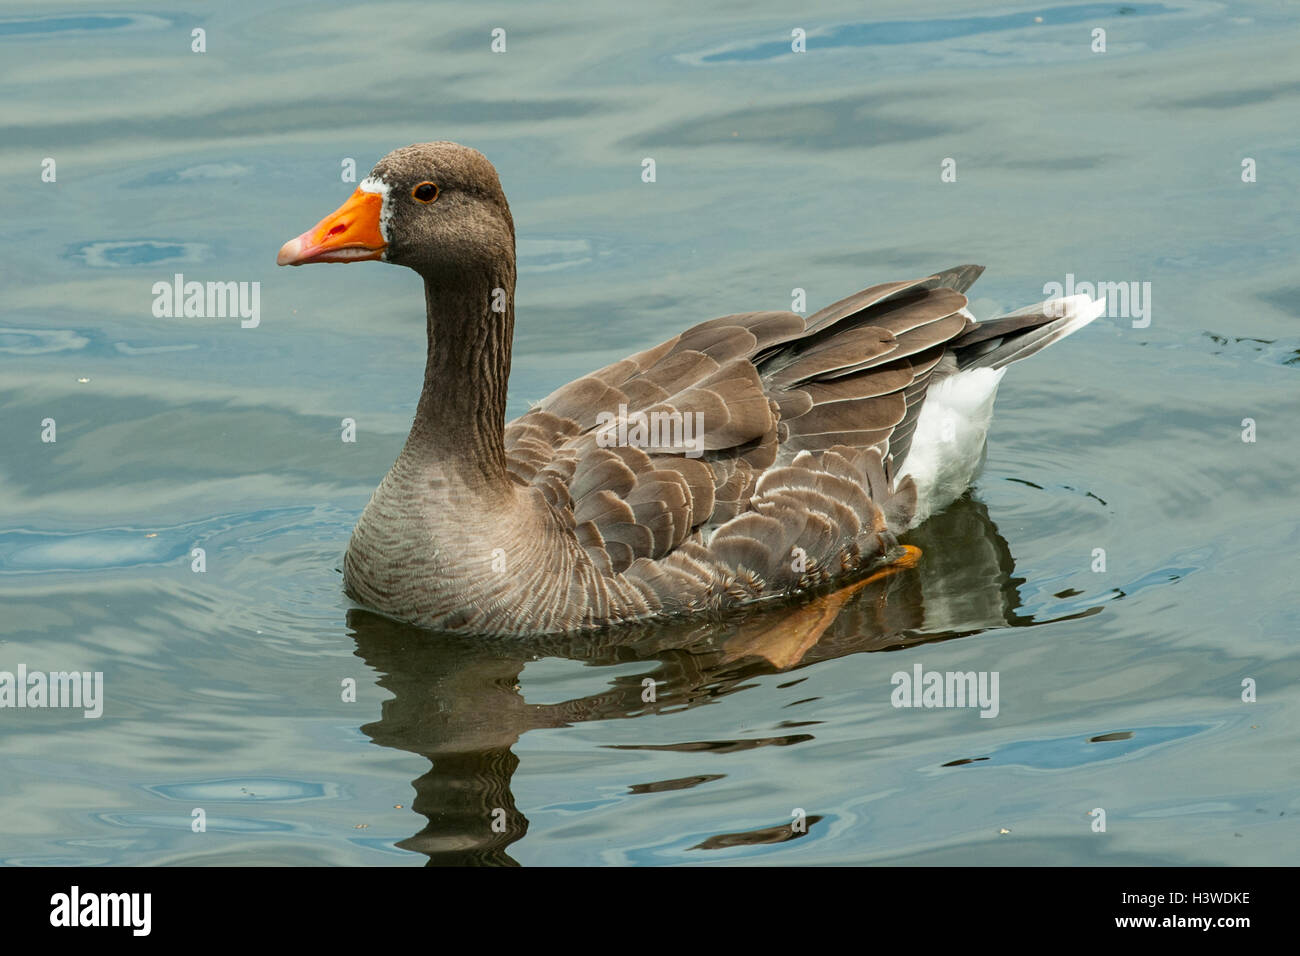 Greylag Goose, Anser anser, in St Jame's Park Lake, London, England Stock Photo